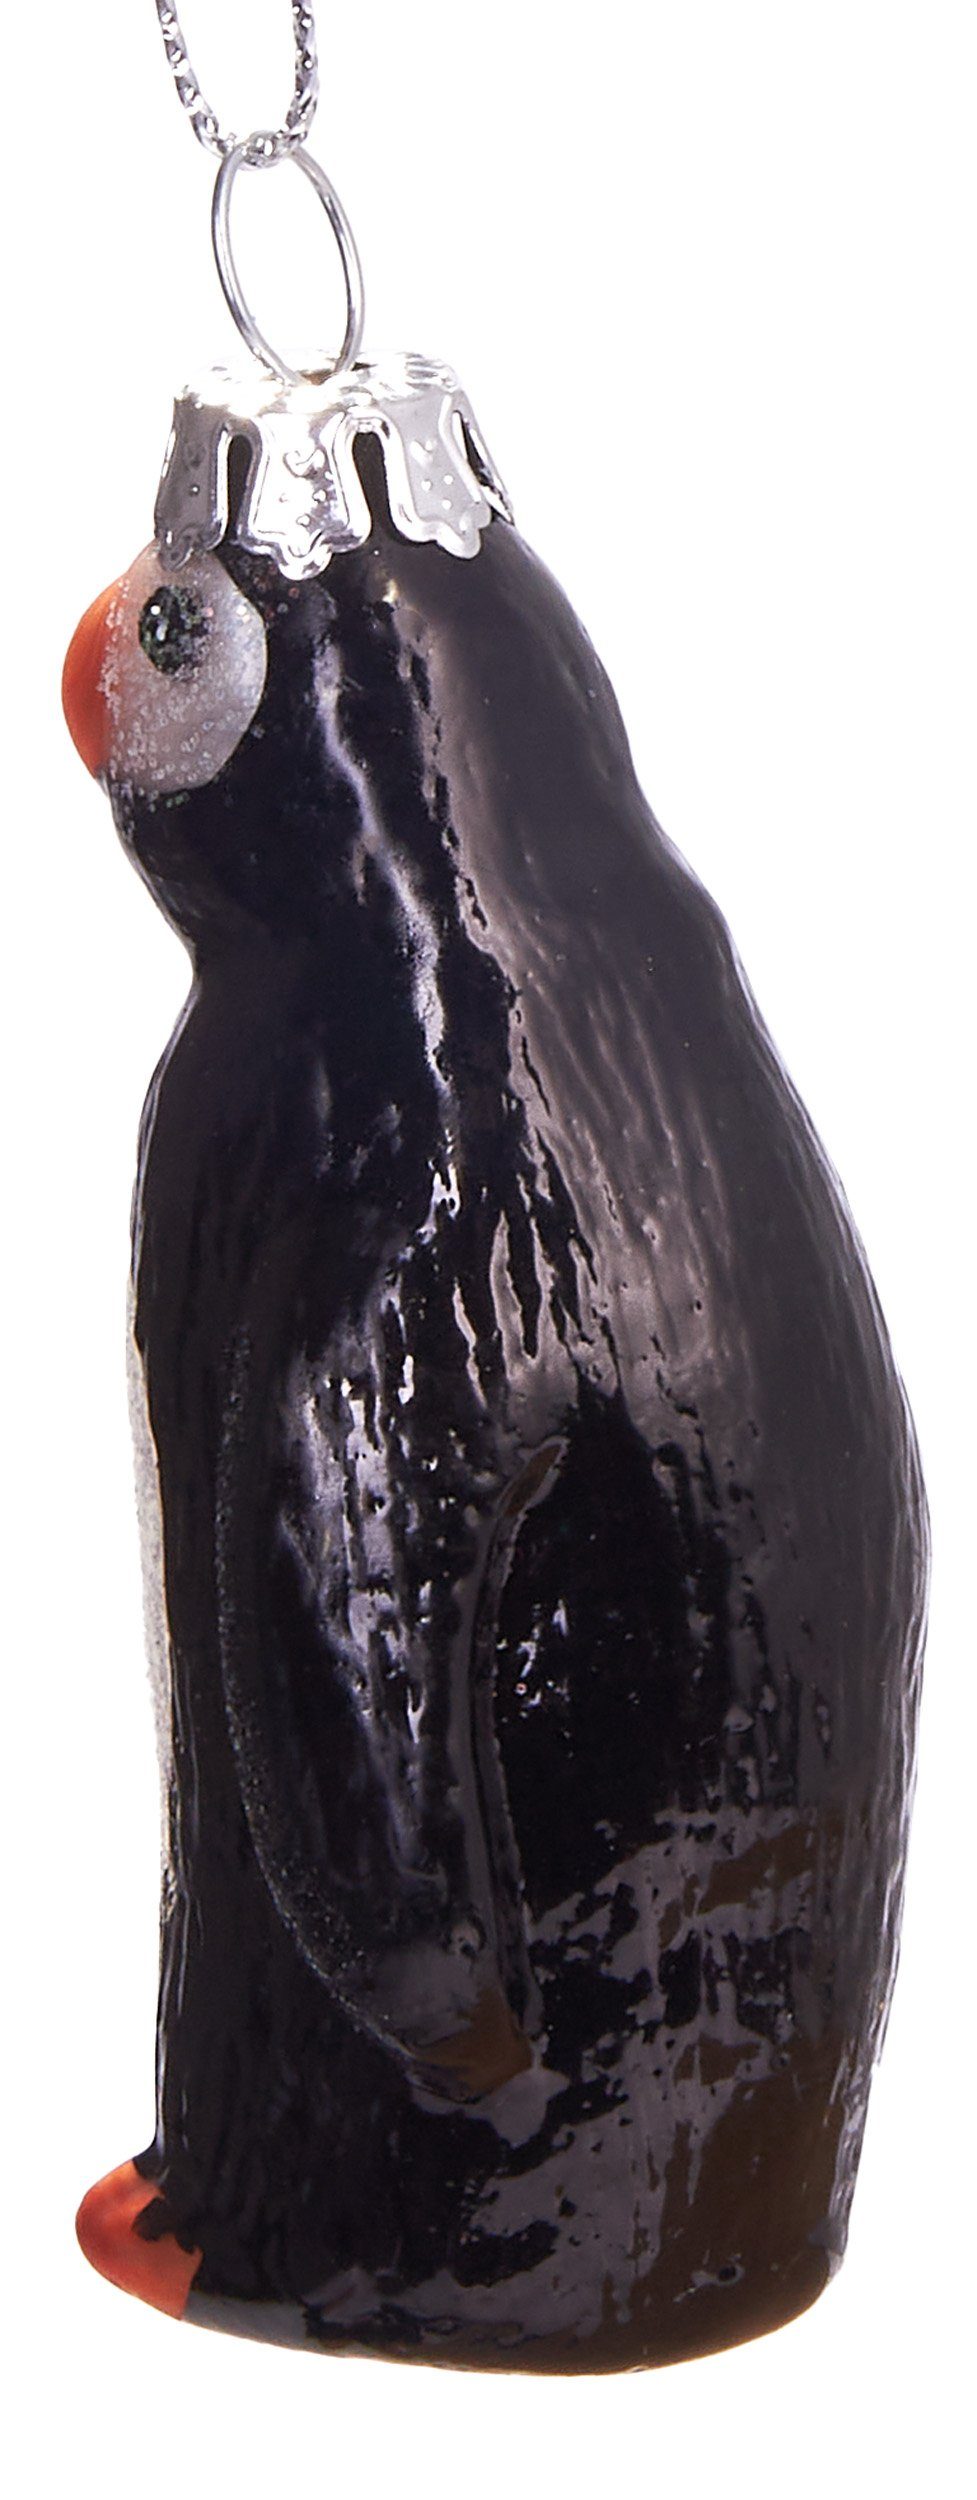 BRUBAKER handbemalt tierischer Weihnachtskugel aus Glas, - Weihnachtsschmuck-Anhänger Mundgeblasene Christbaumschmuck Pinguin, 7.5 cm